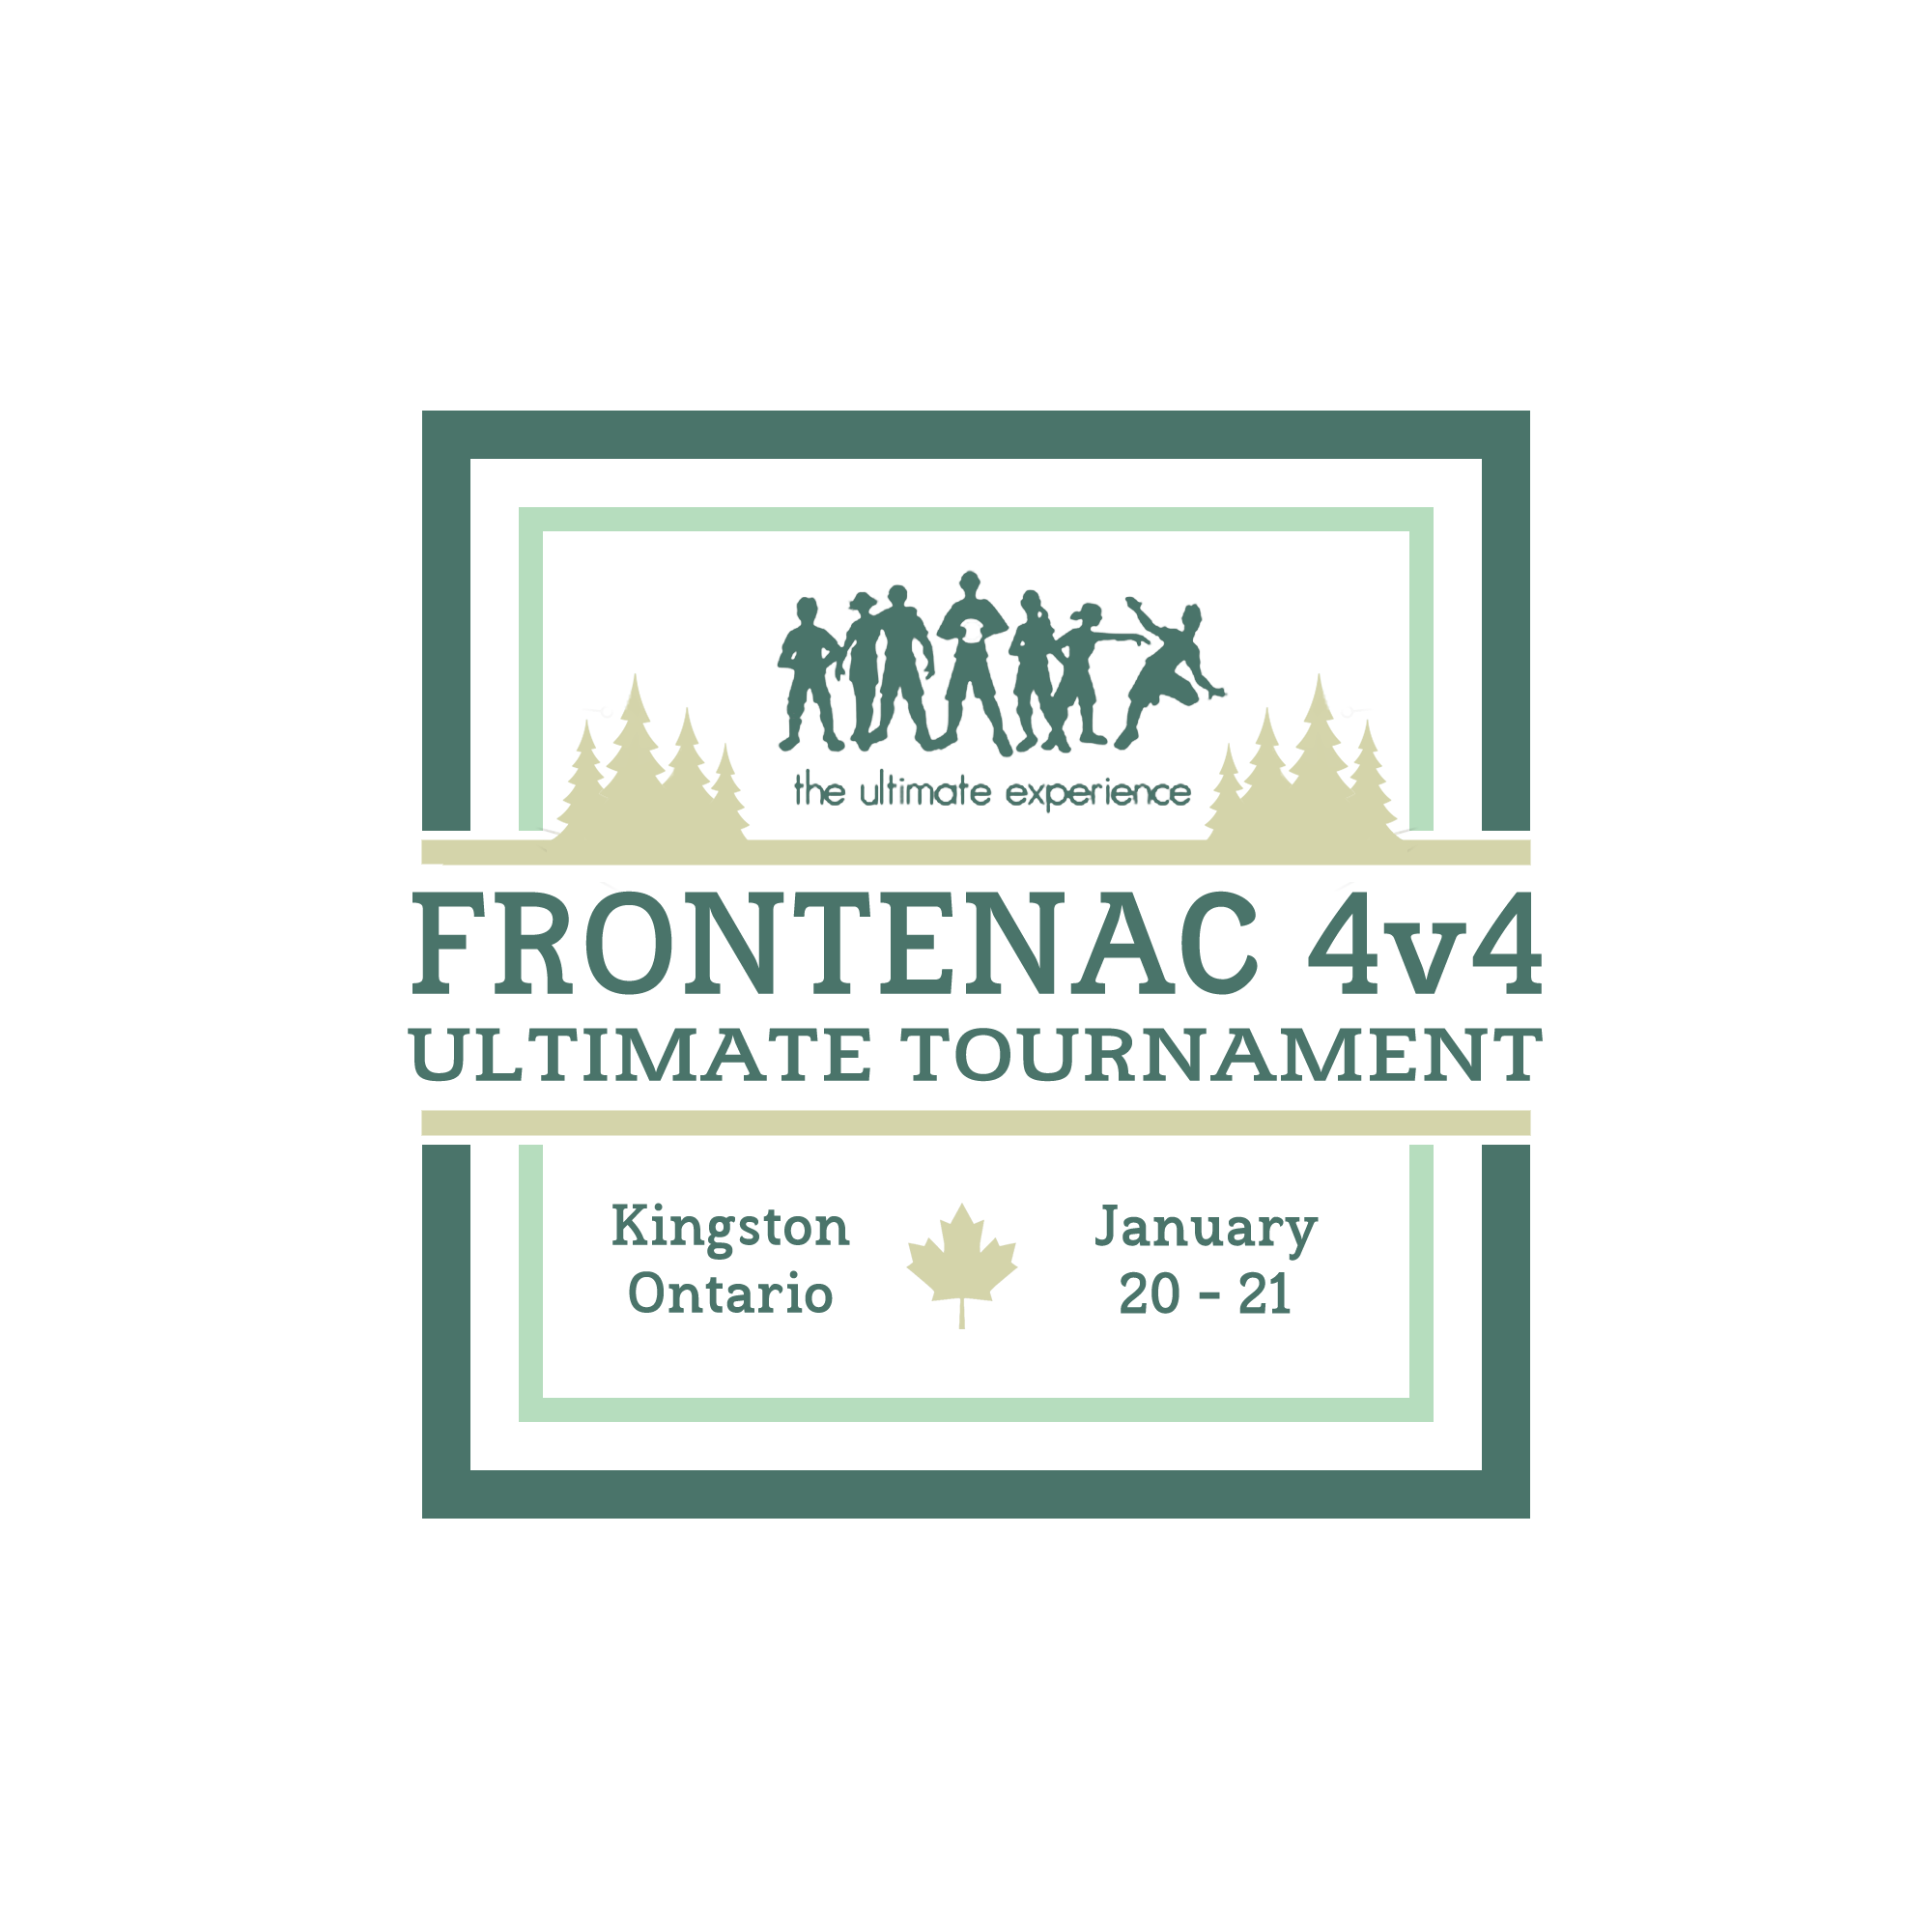 Frontenac 4v4 logo